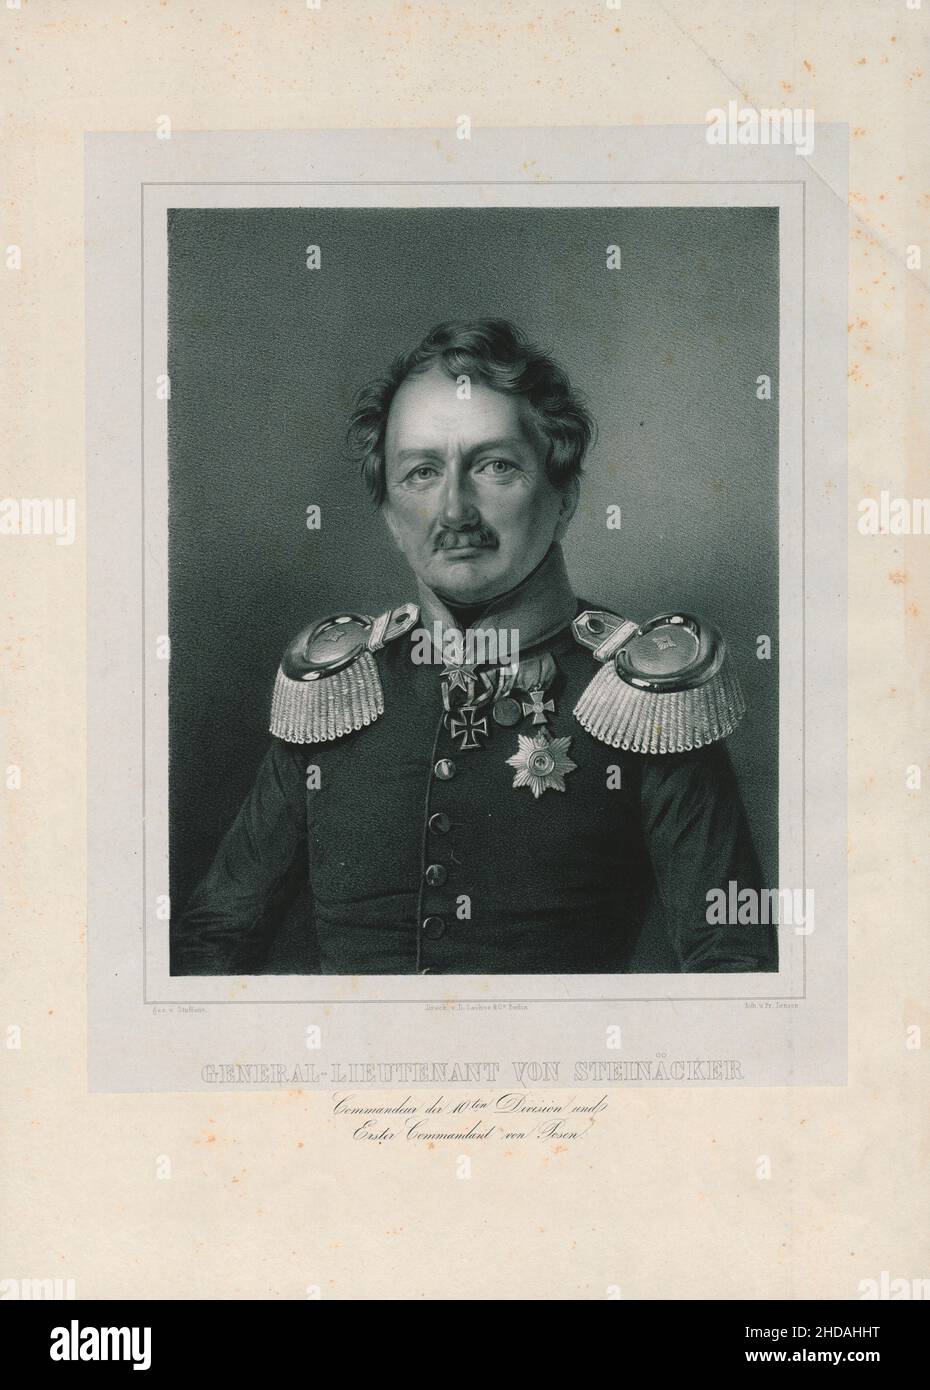 Porträt des Generalleutnants von Steinäcker: Kommandant der Division 10th und erster Kommandant von Posen. 1843 Stockfoto